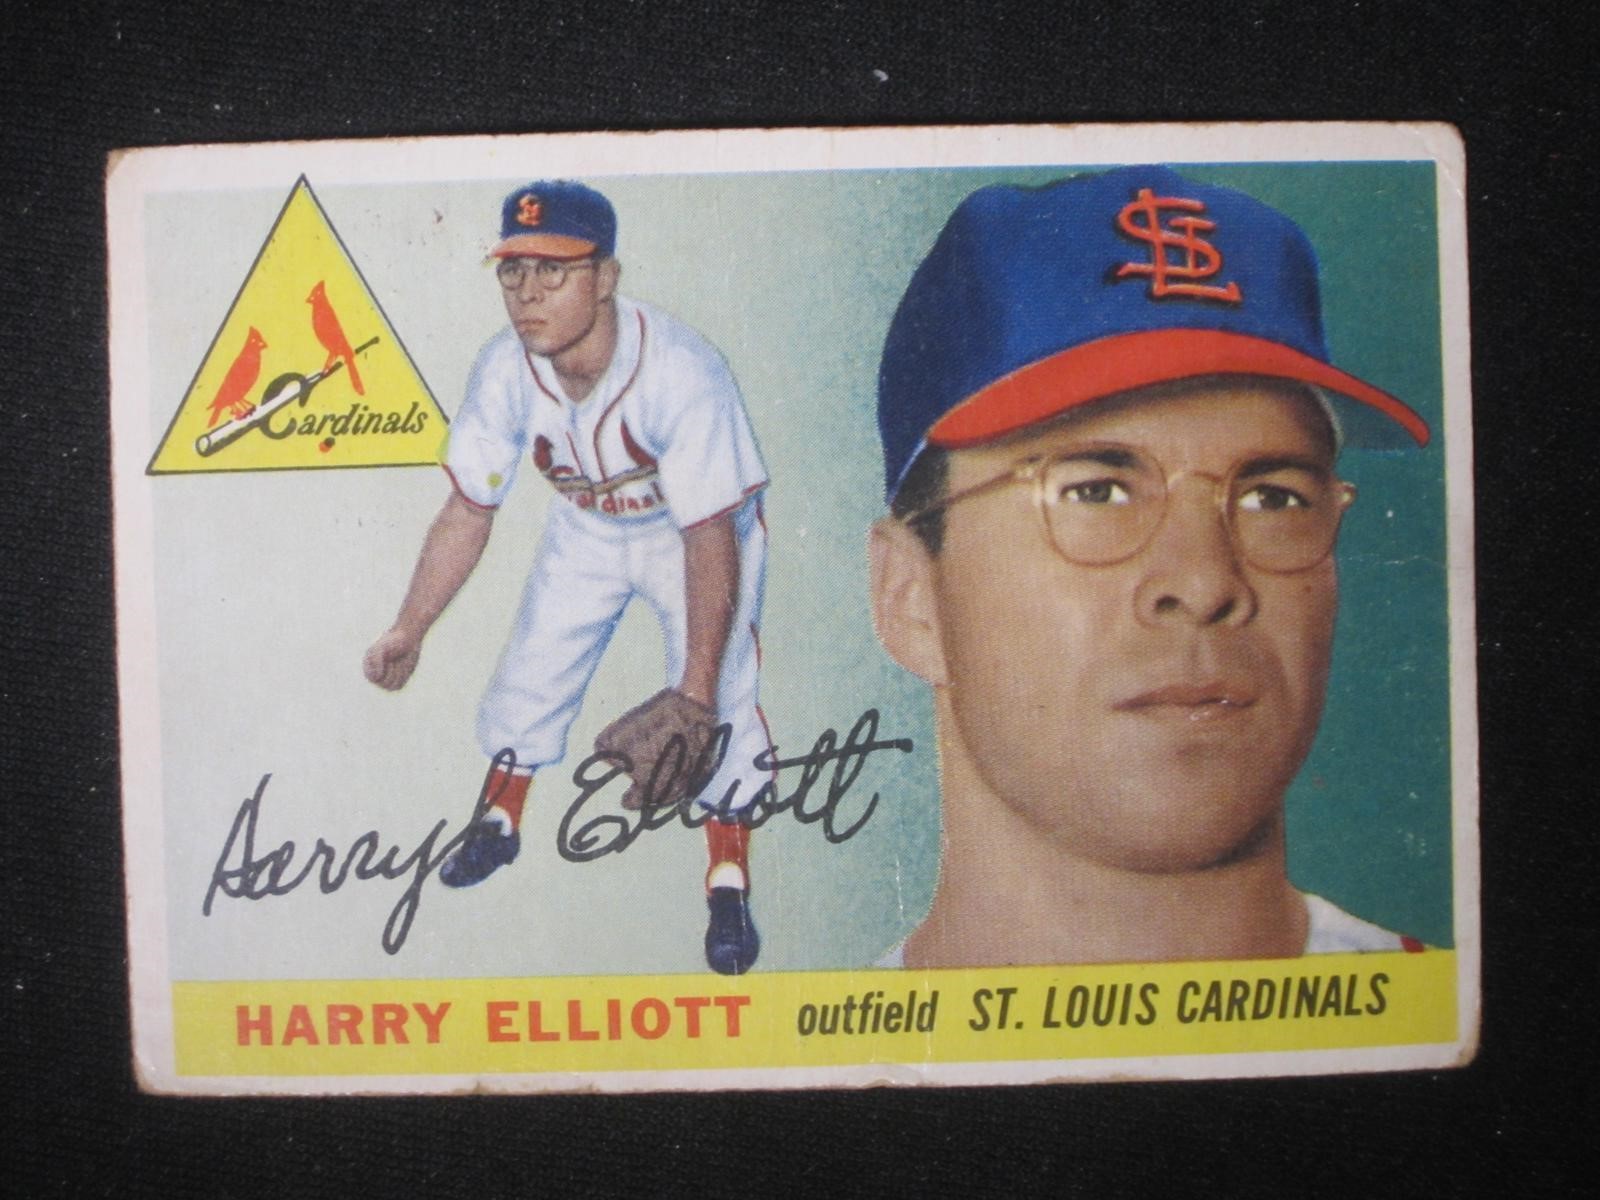 1955 TOPPS #137 HARRY ELLIOTT CARDINALS